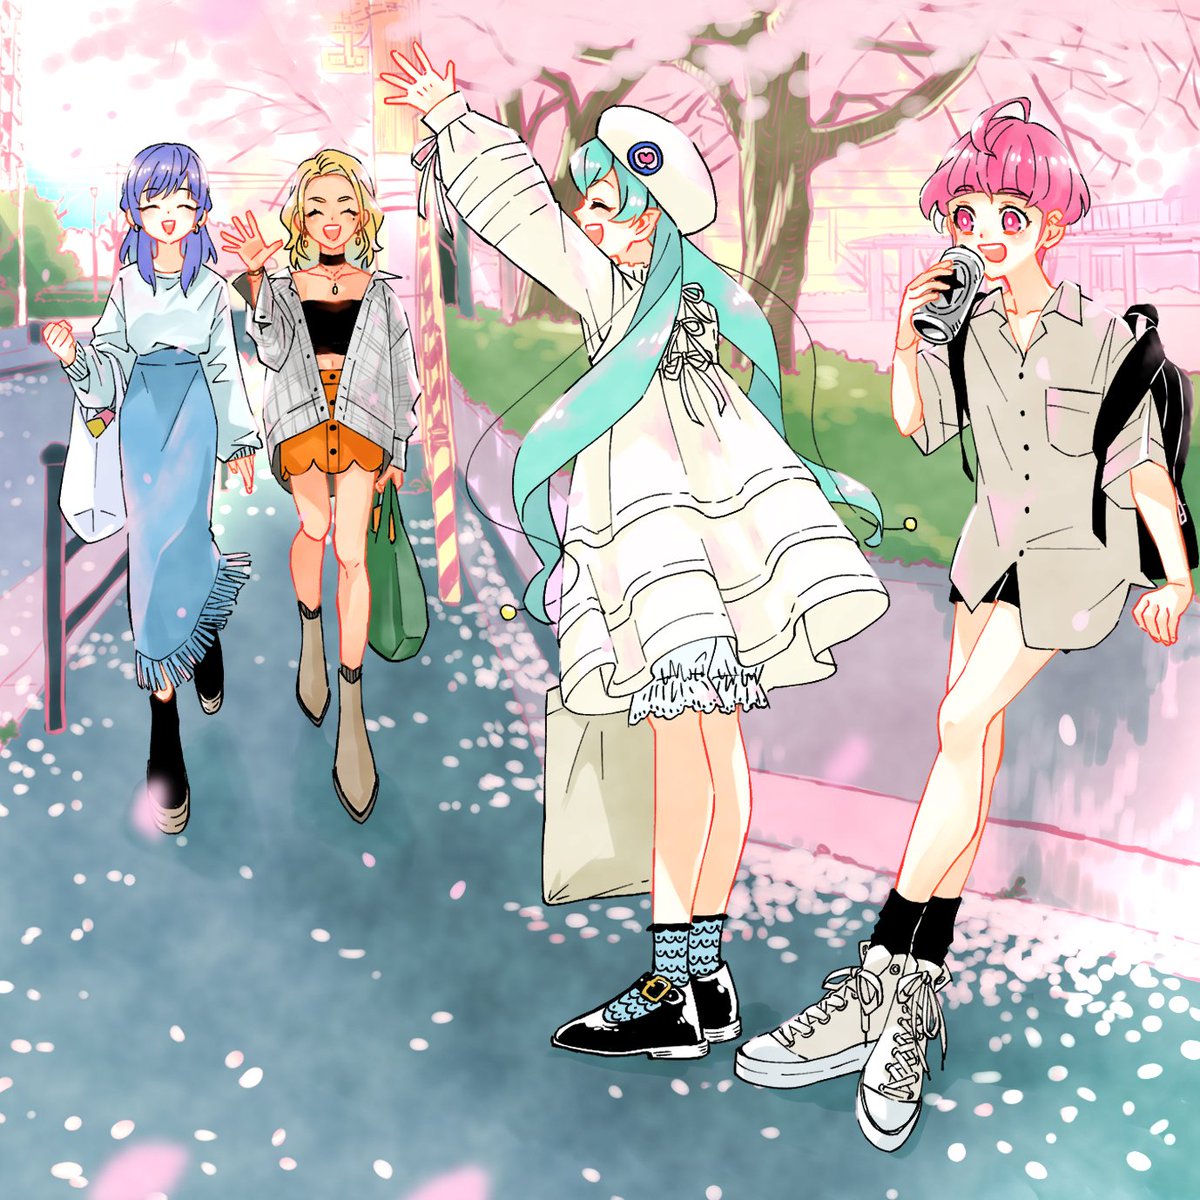 multiple girls pink hair 4girls blonde hair bag skirt cherry blossoms  illustration images